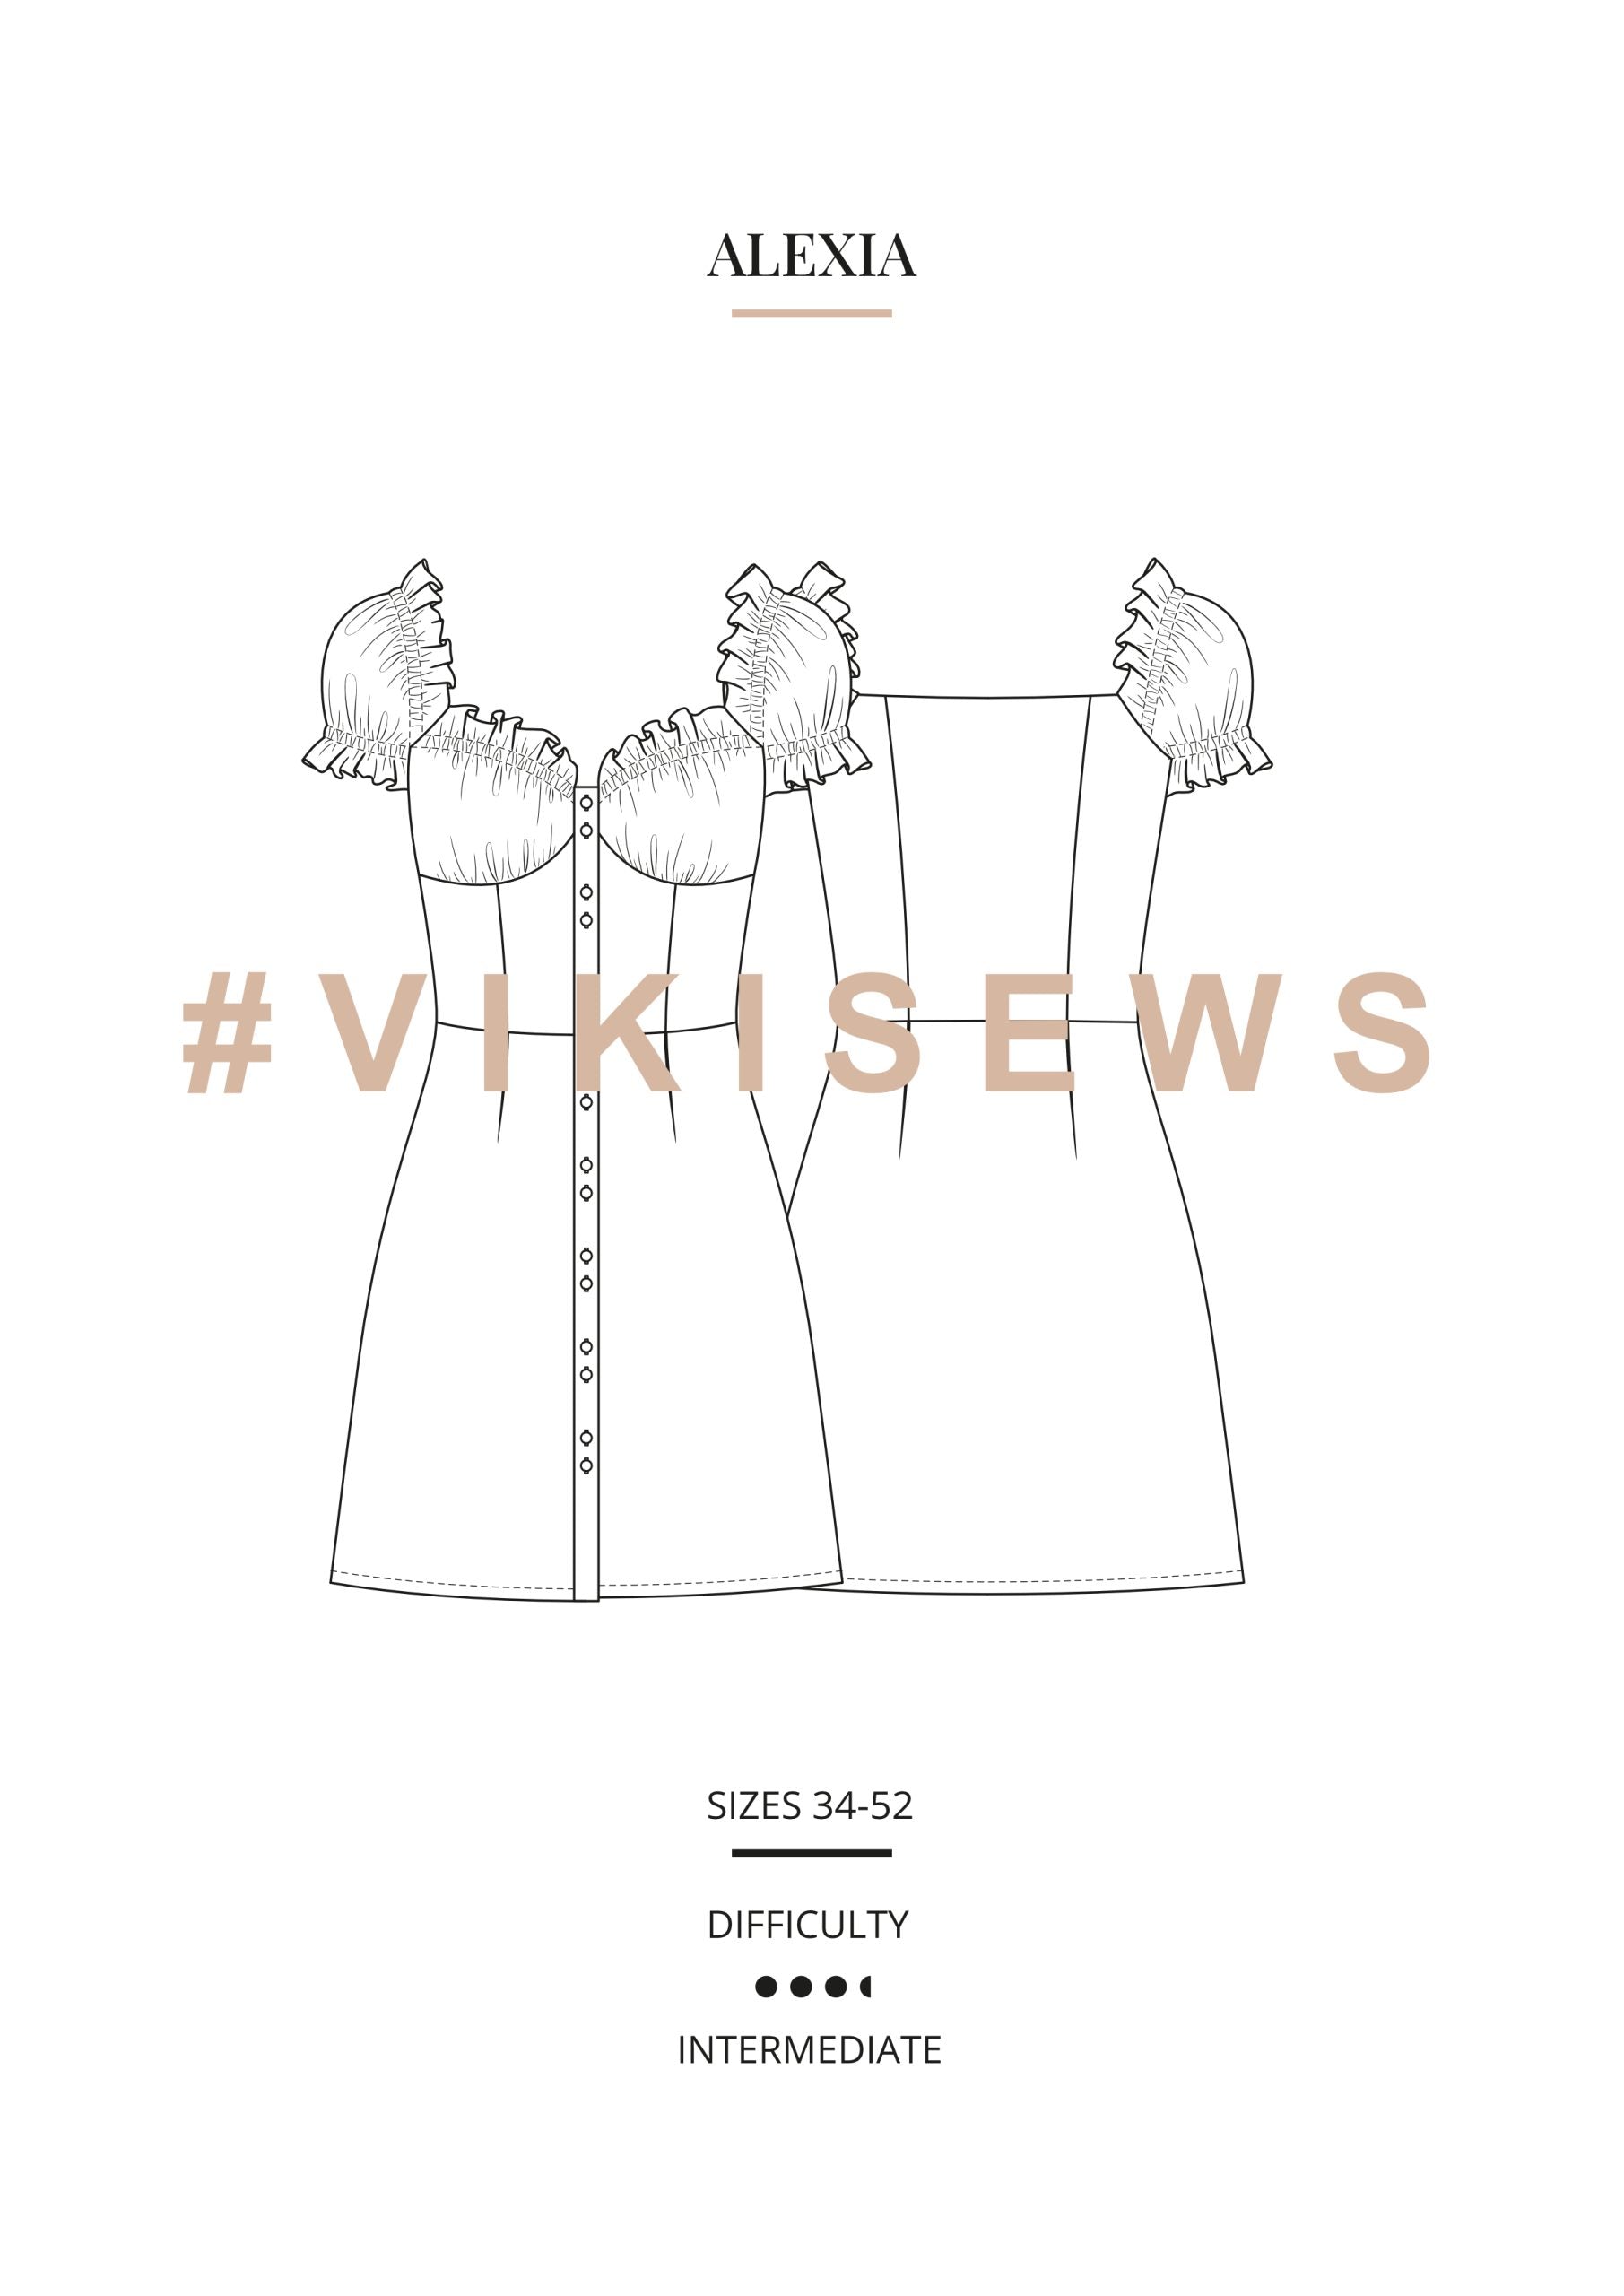 Vikisews Alexia Dress